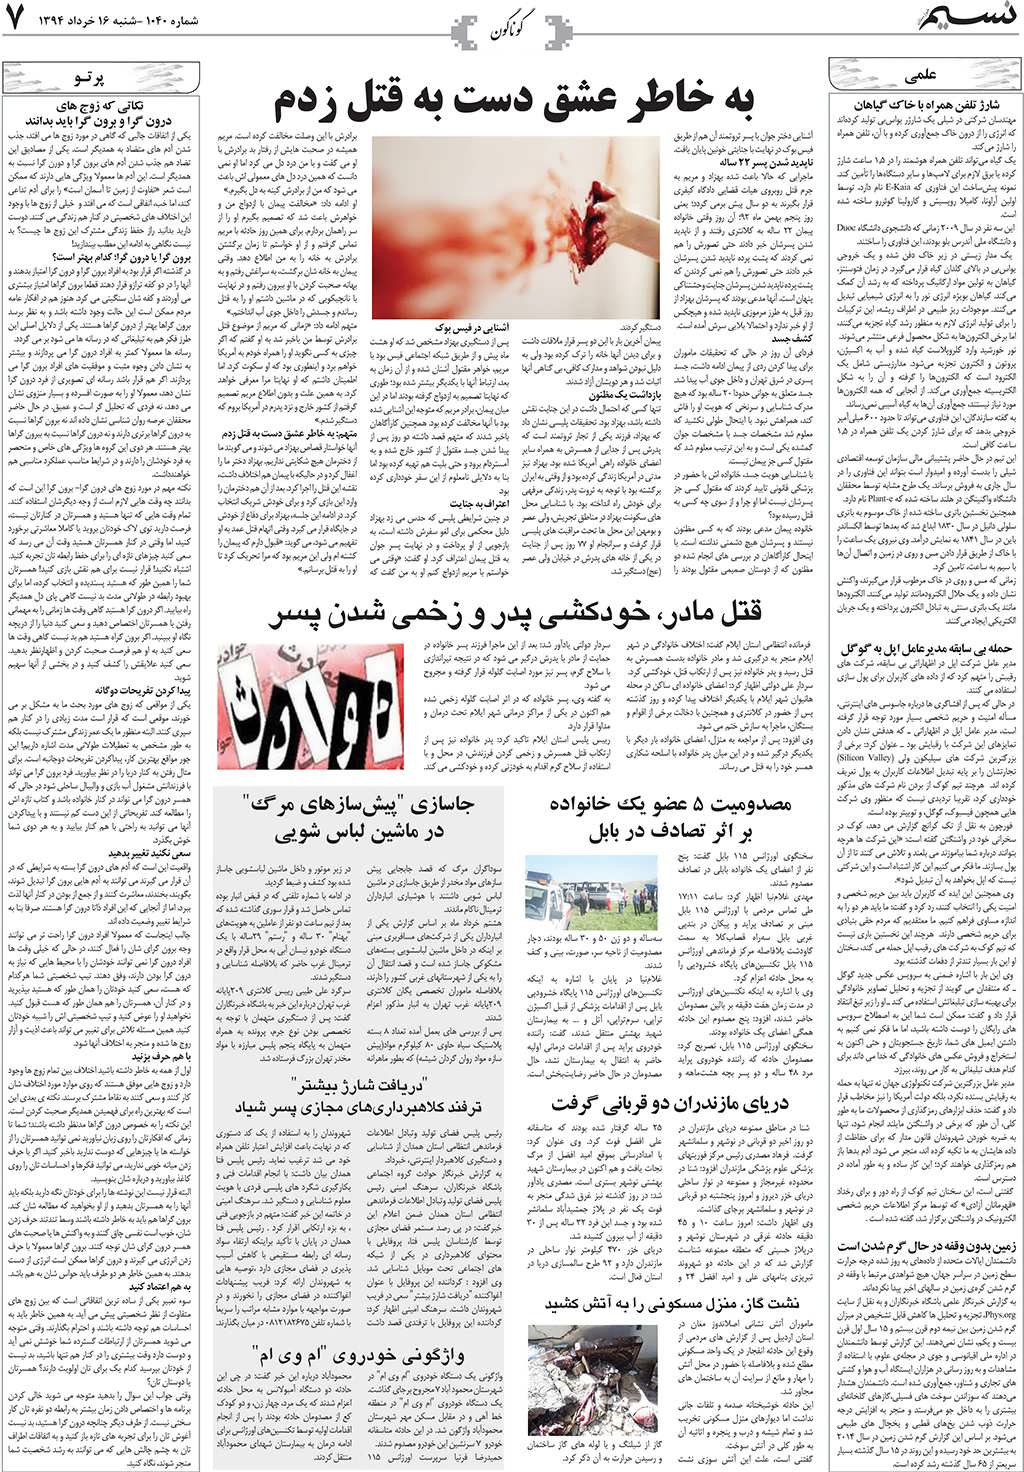 صفحه گوناگون روزنامه نسیم شماره 1040